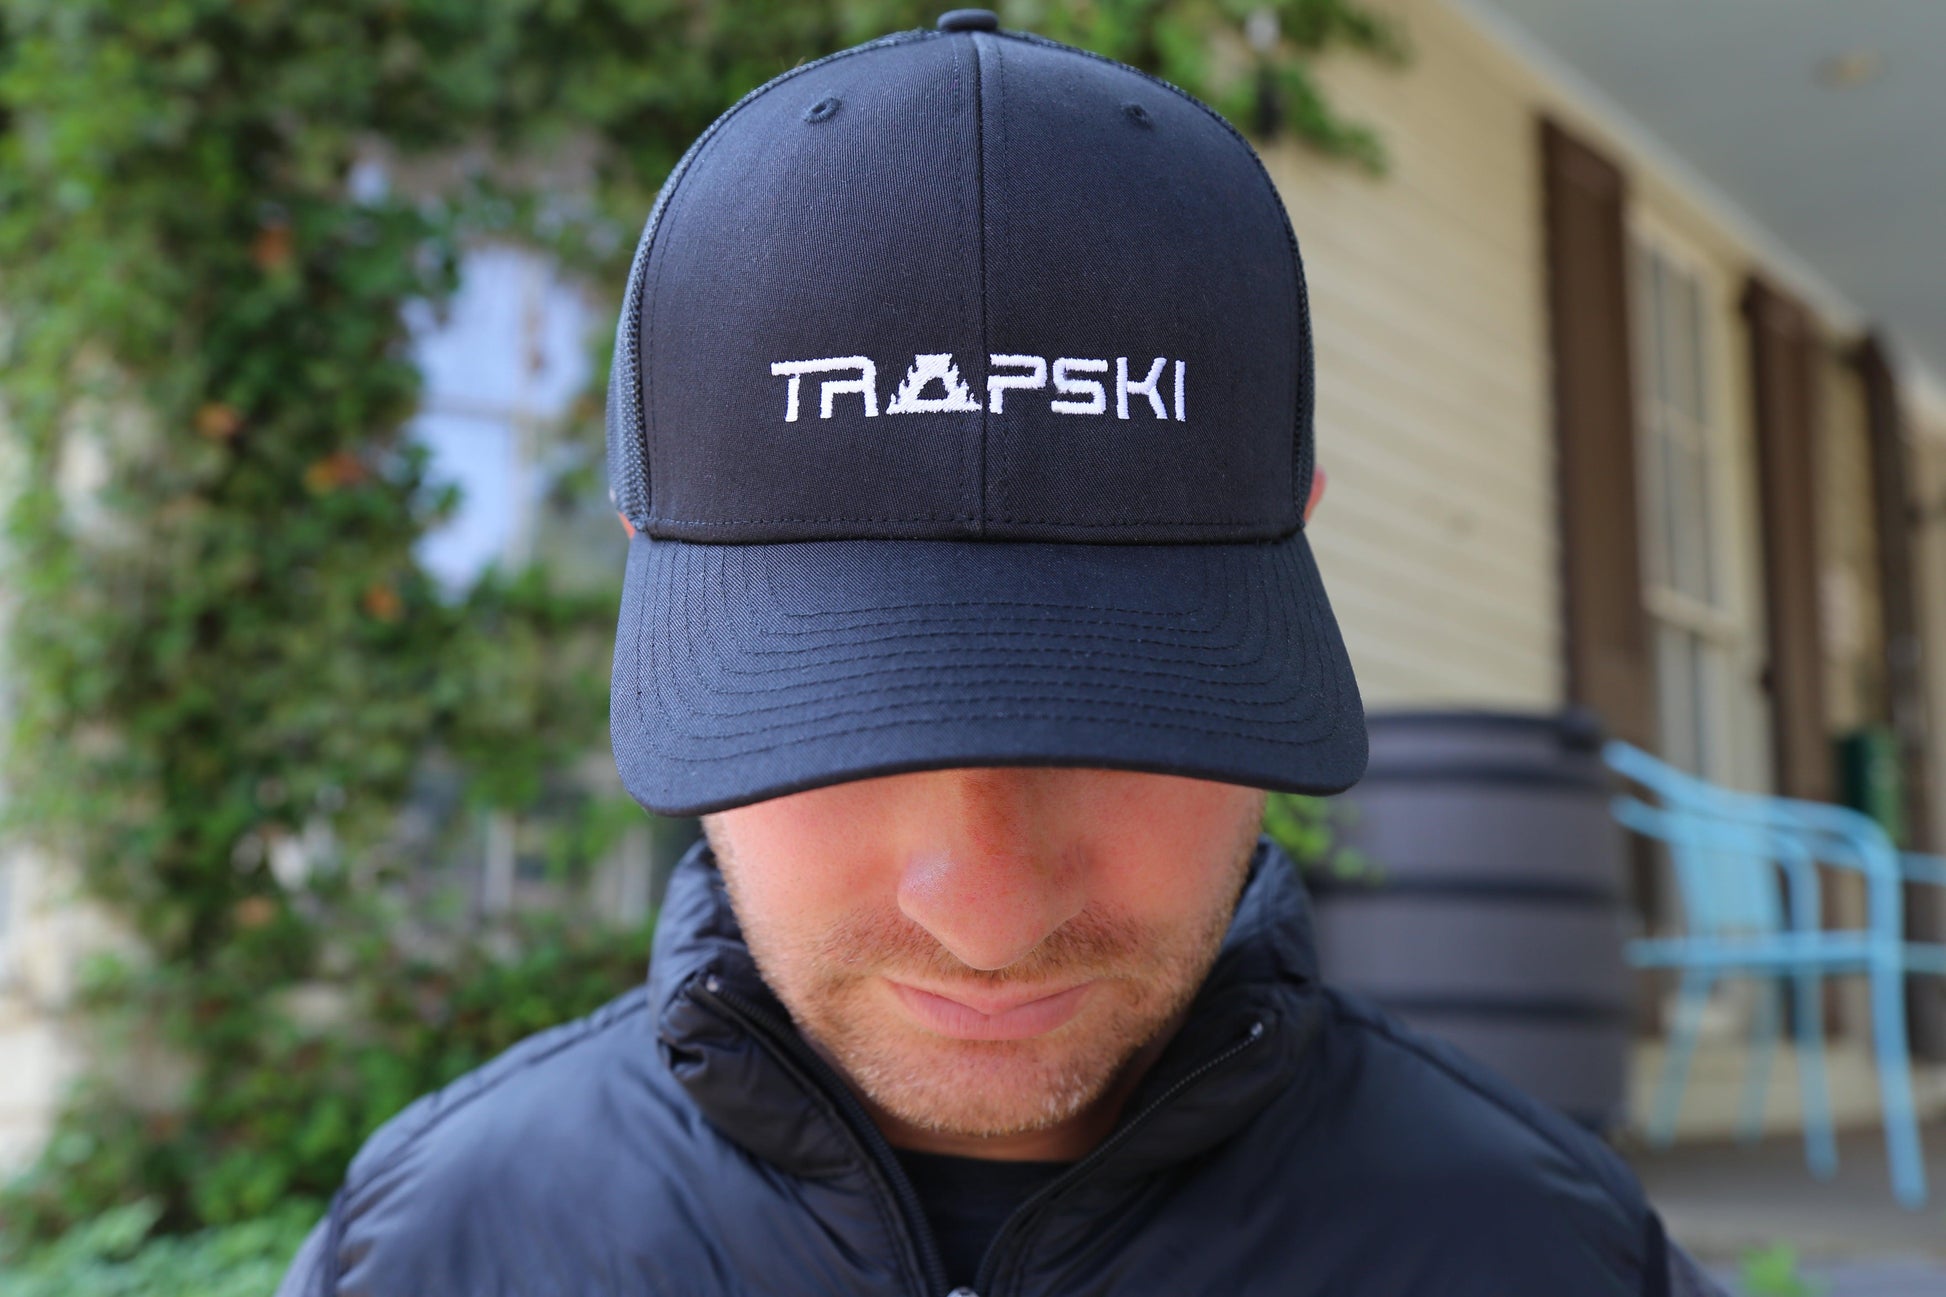 TRAPSKI Trucker Hat - TRAPSKI, LLC